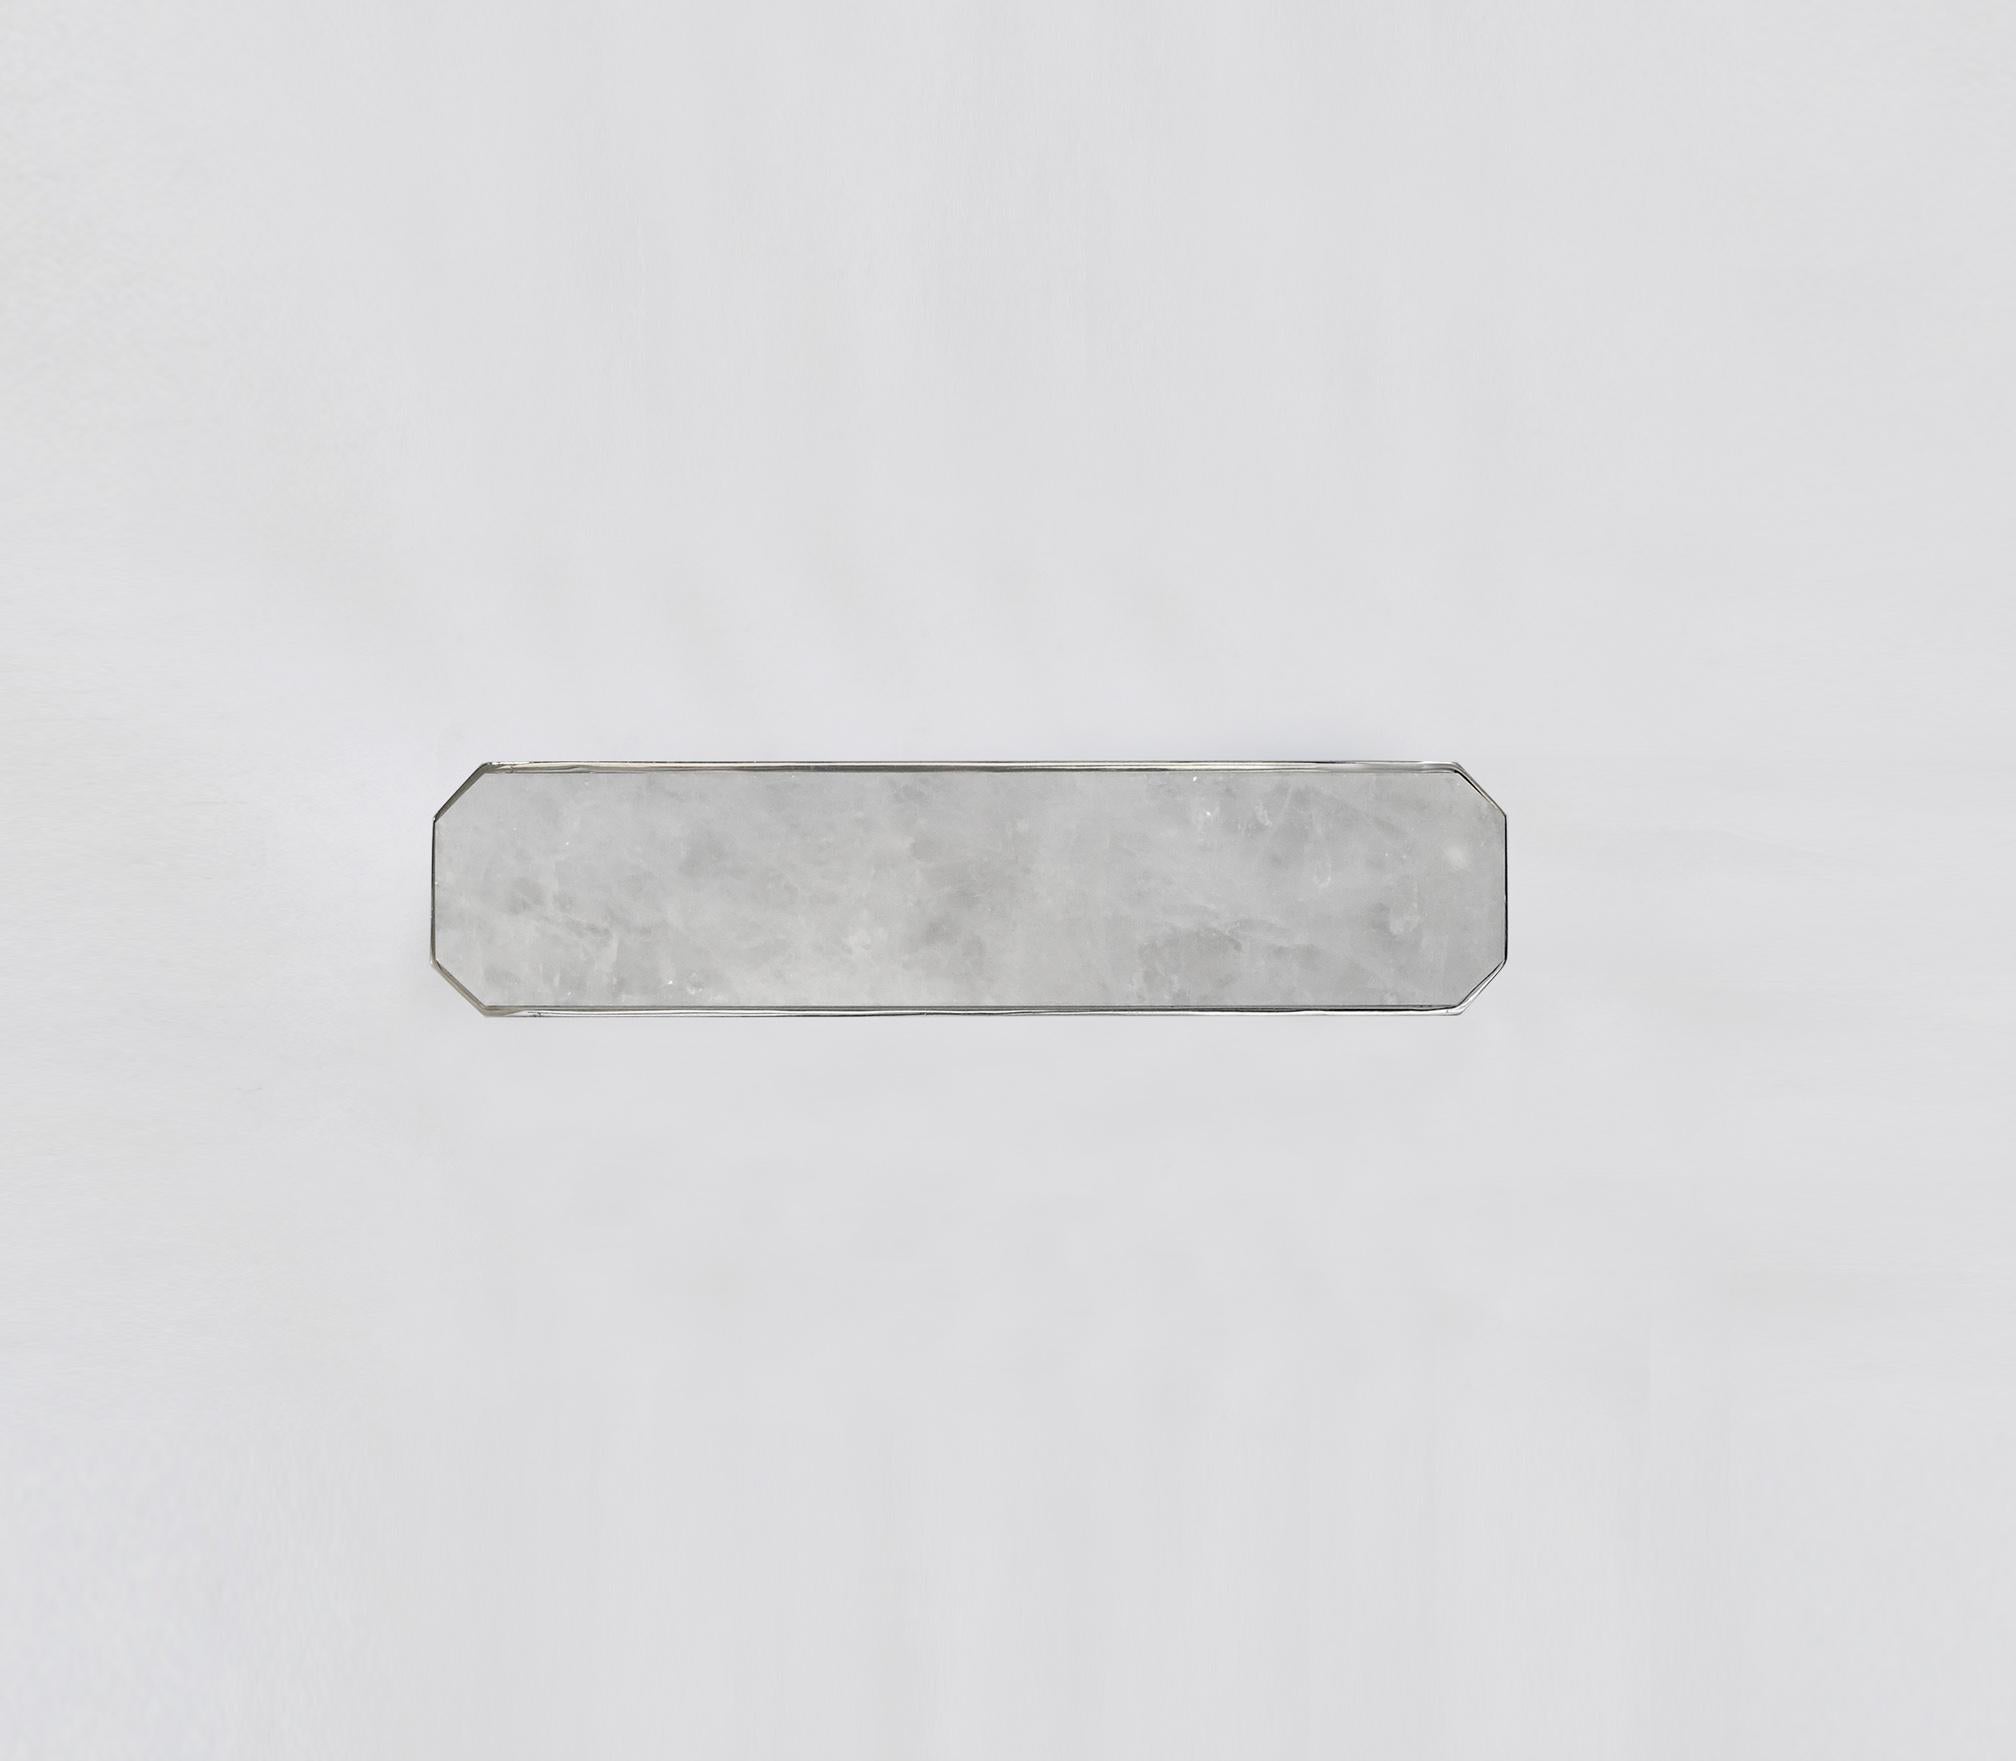 Achteckiger Griff aus Bergkristall mit vernickeltem Dekor. Erstellt von Phoenix Gallery, NYC.
Größe und Ausführung auf Anfrage.